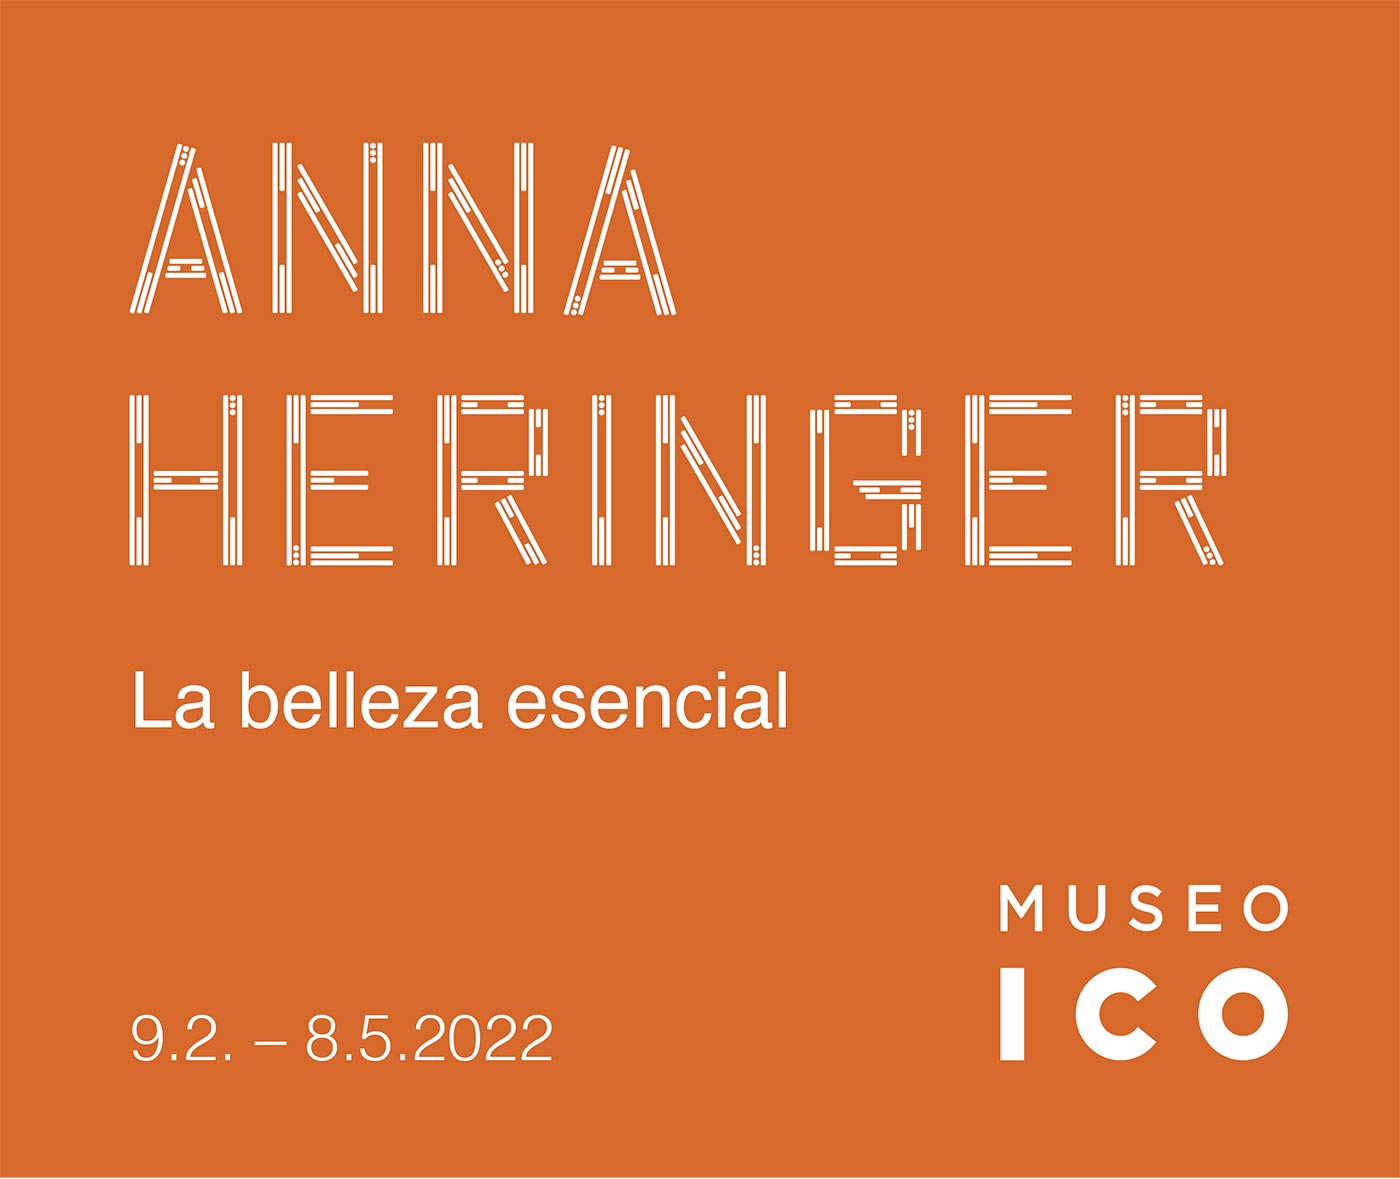 Anna Heringer. La belleza esencial